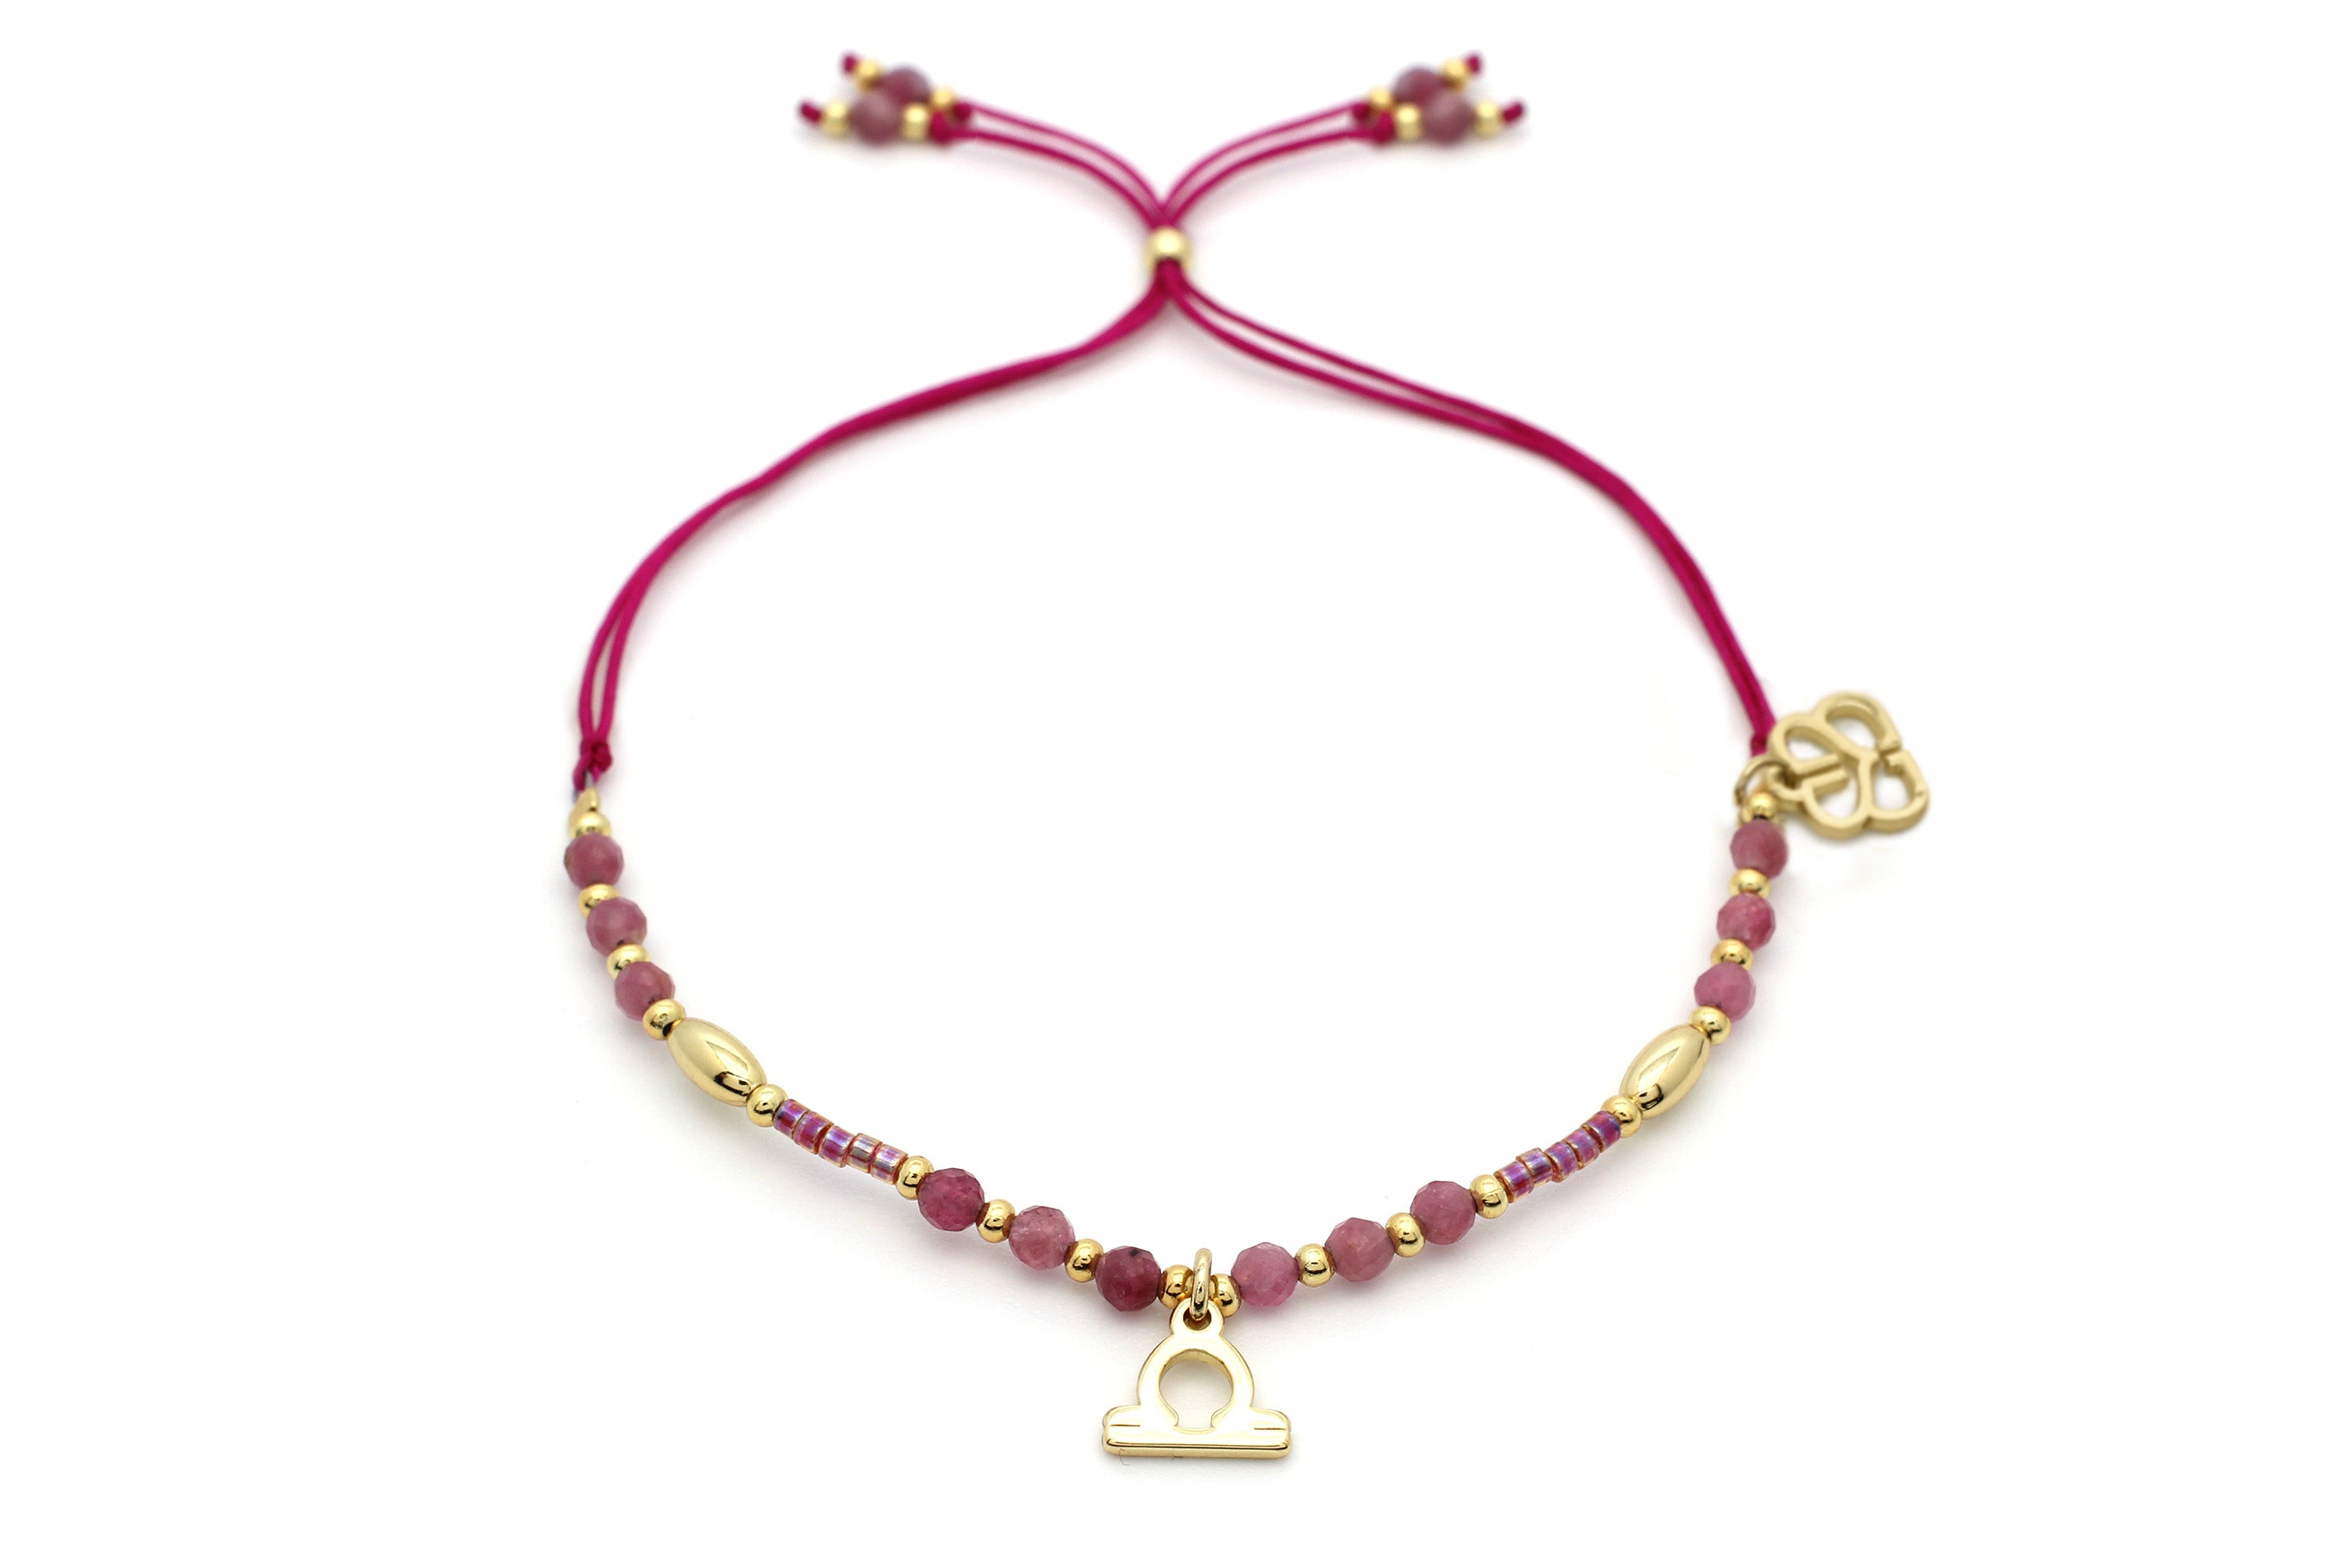 Libra Zodiac Gemstone Gold Bracelet - Boho Betty